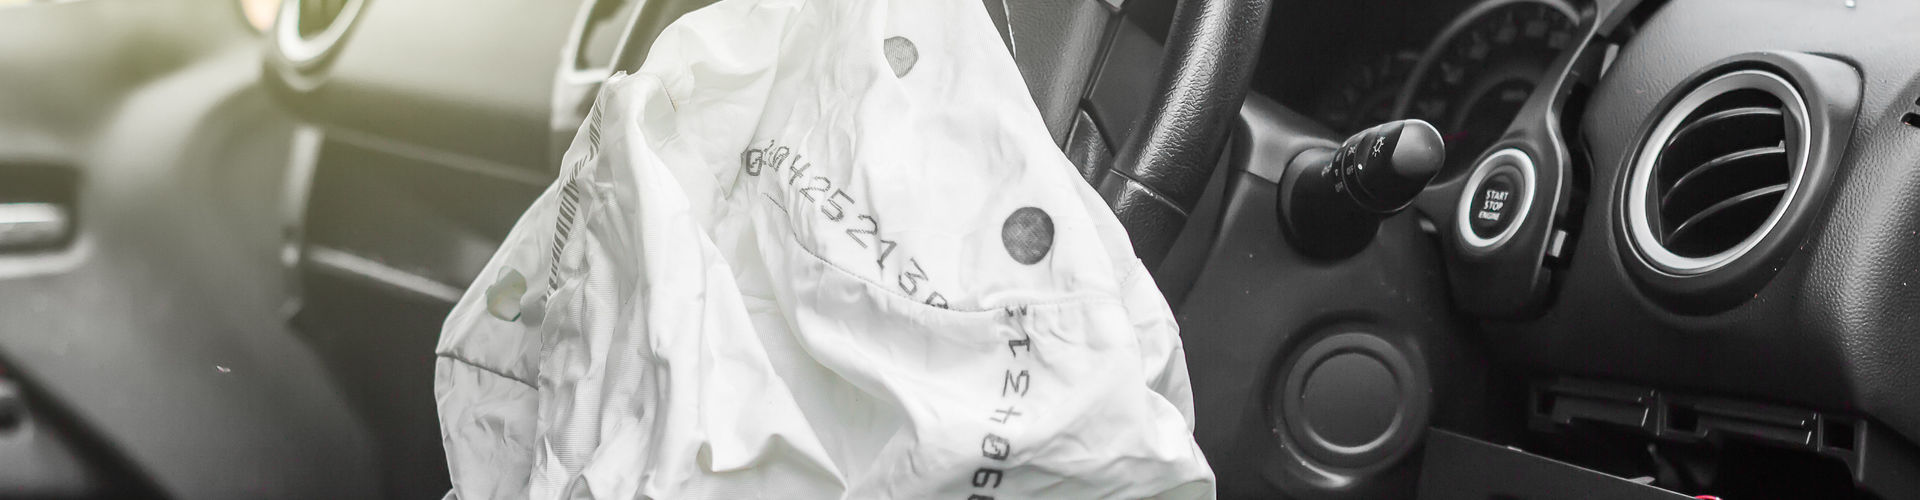 Ein ausgelöster Air Bag hängt aus dem Lenkrad eines Autos. Dahinter eine zersprungene Windschutzscheibe